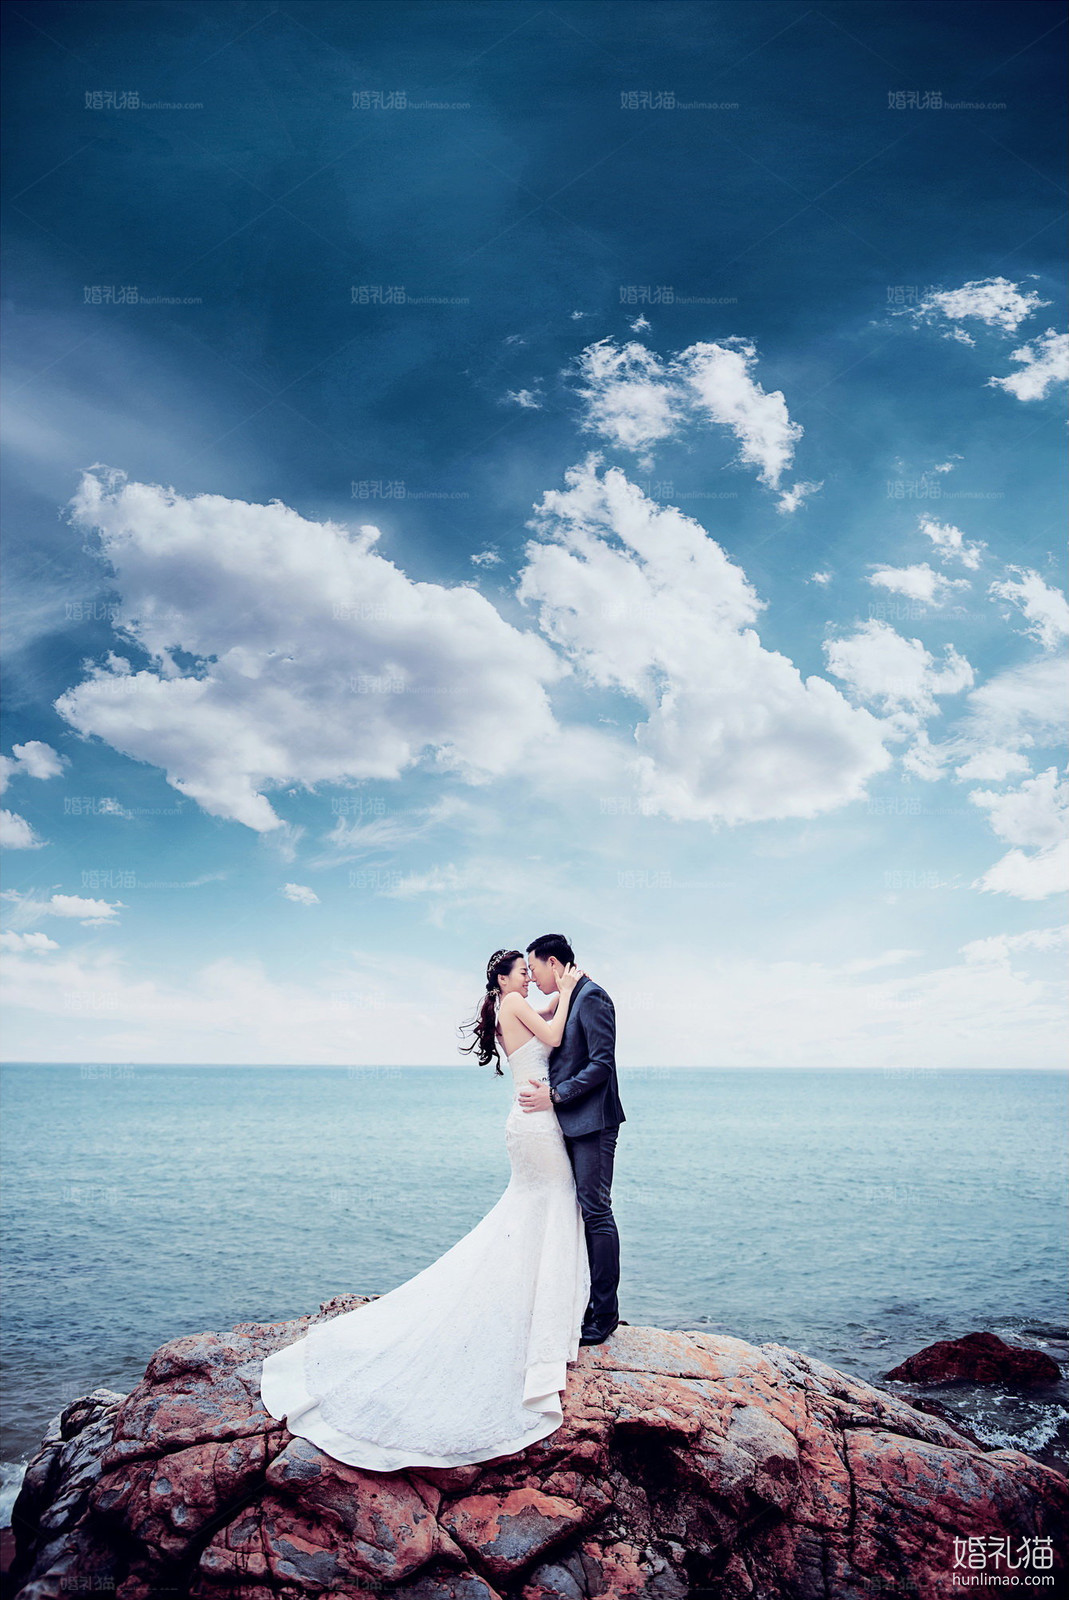 海景结婚照,[海景, 礁石],云浮婚纱照,婚纱照图片